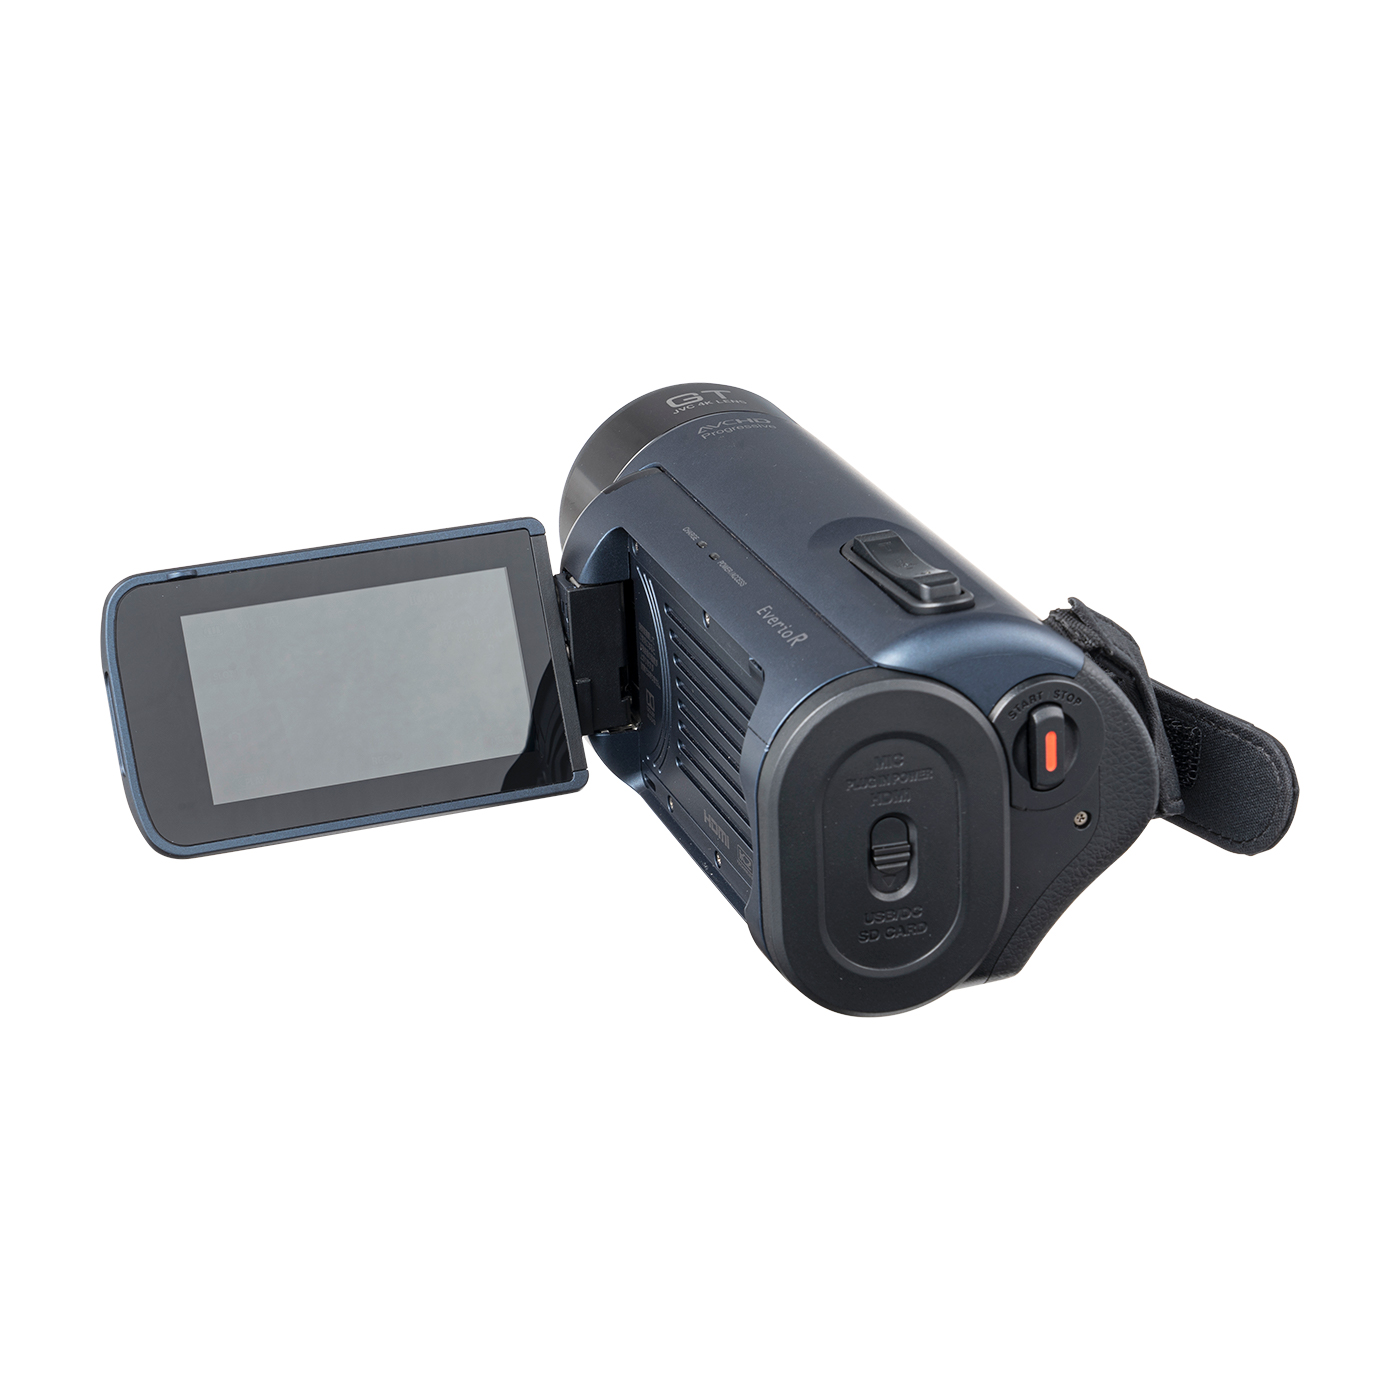 オープニング 大放出セール JVC GZ-RY980-A 4Kメモリームービー R Everio ビデオカメラ -  avalanche.328234838193491-cloud.co.uk